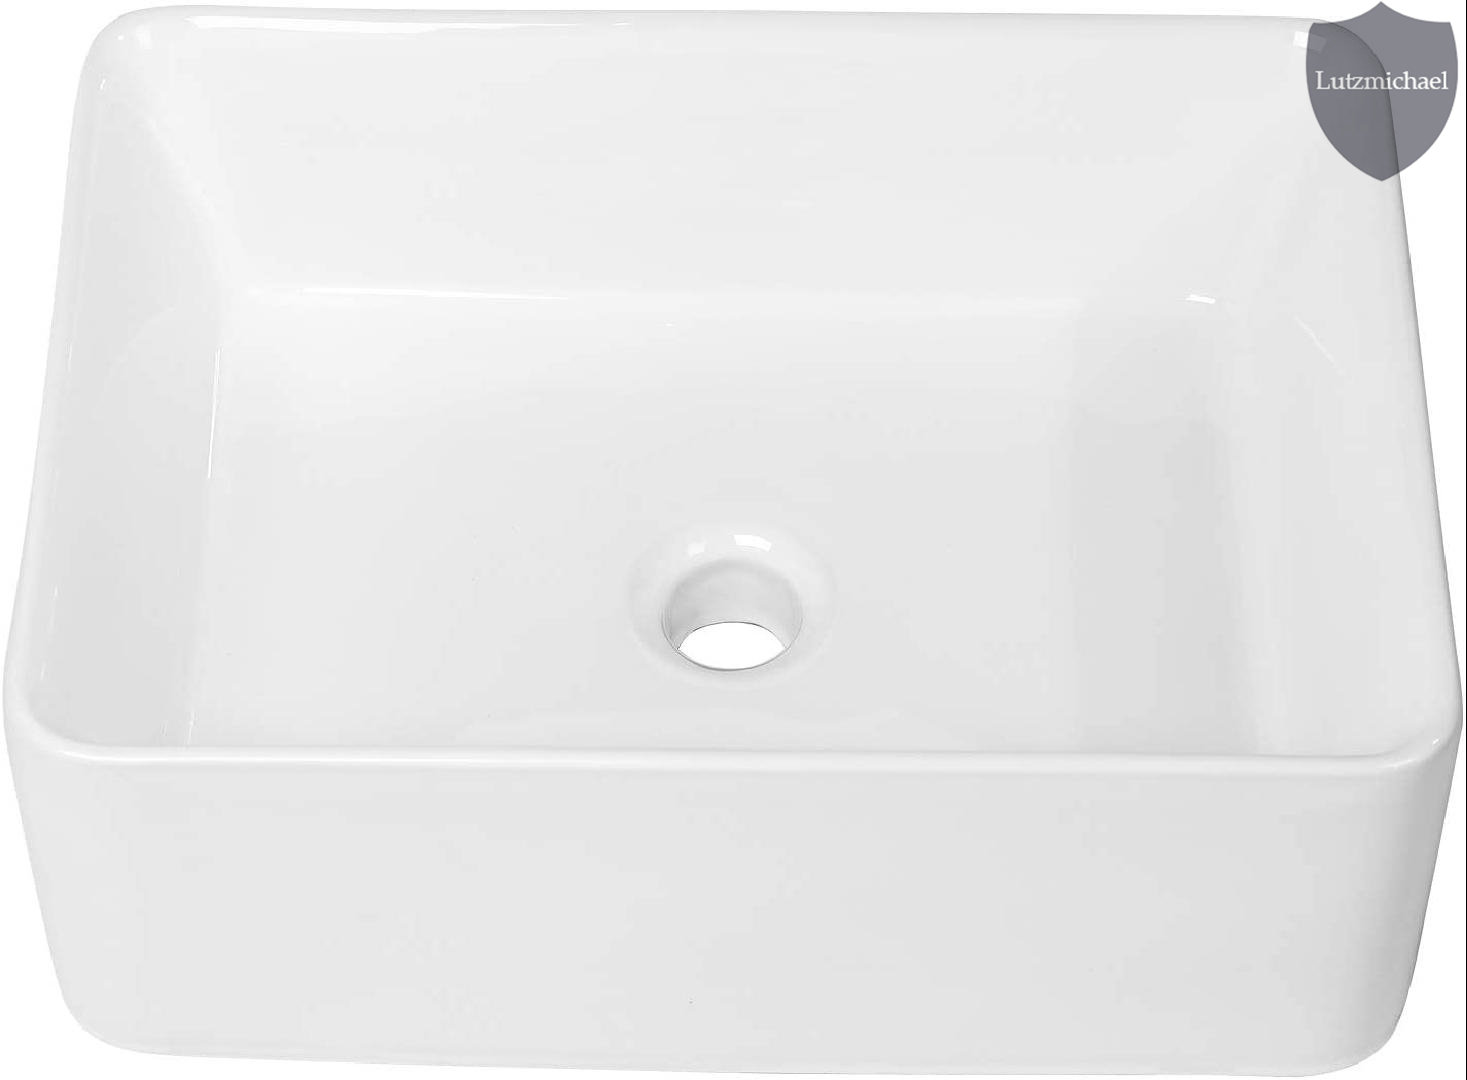 9989 p01c ceramic rectangular vessel bathroom sink